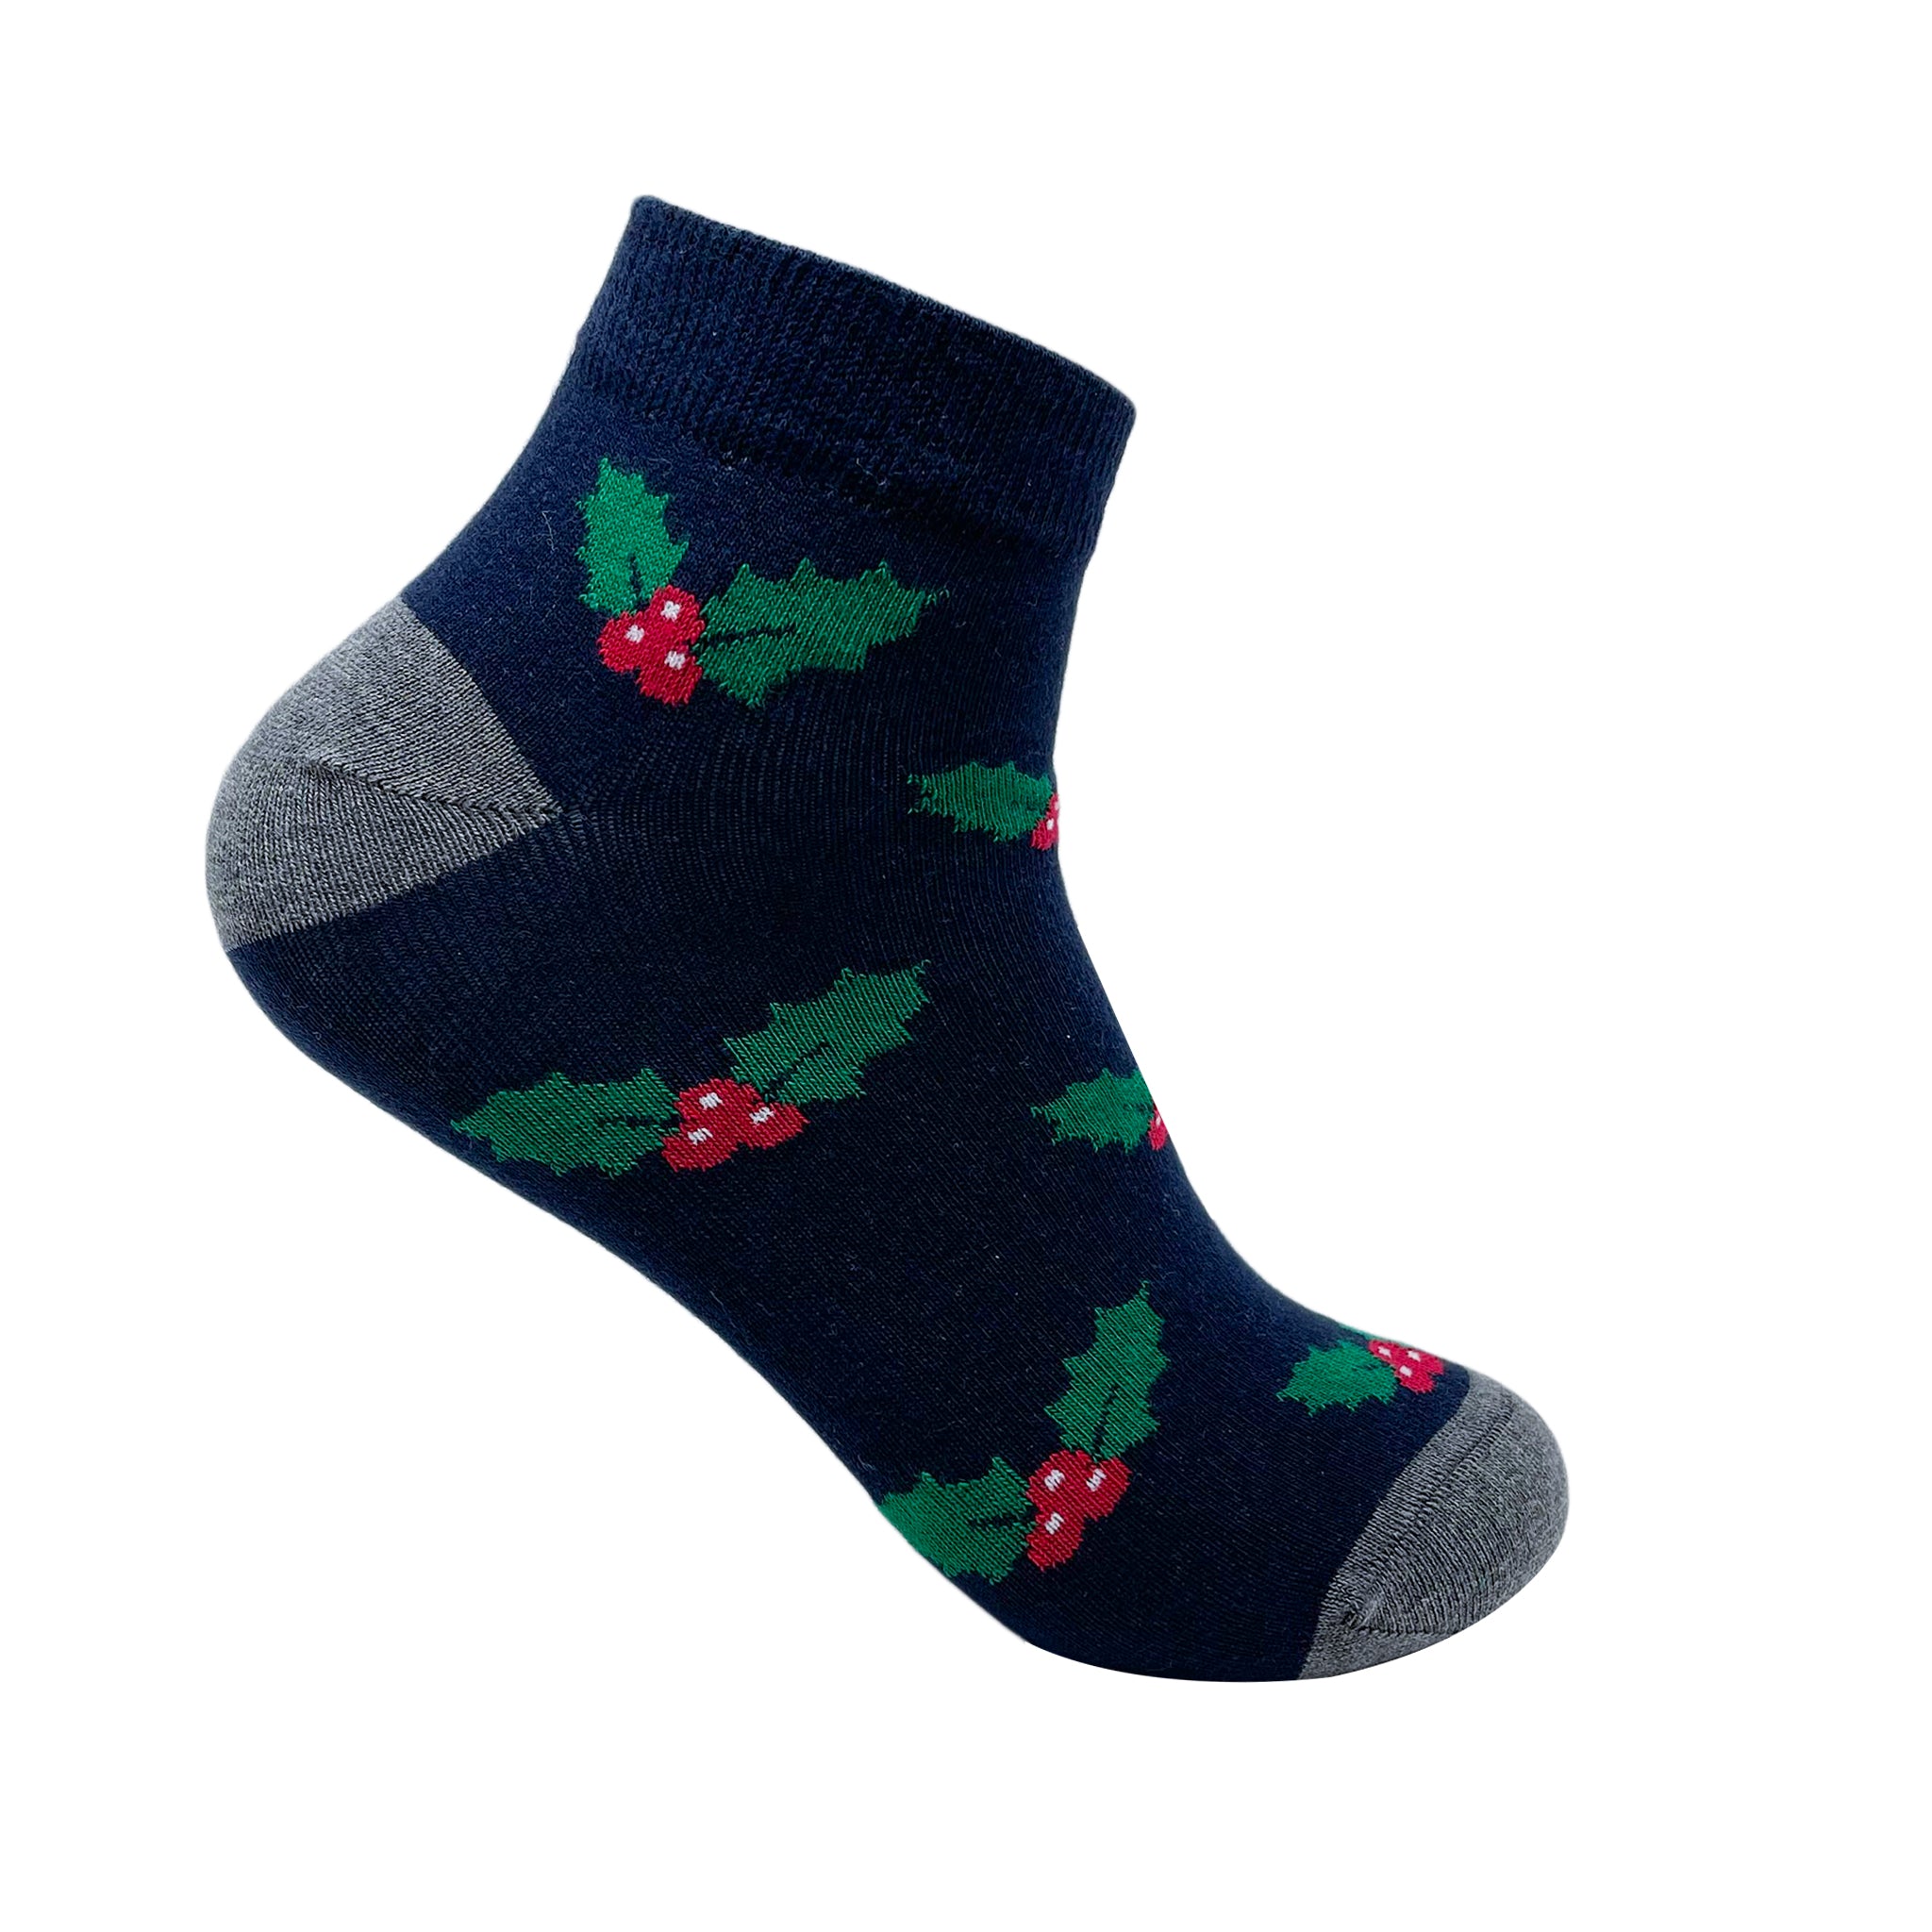 Under the mistletoe ankle socks